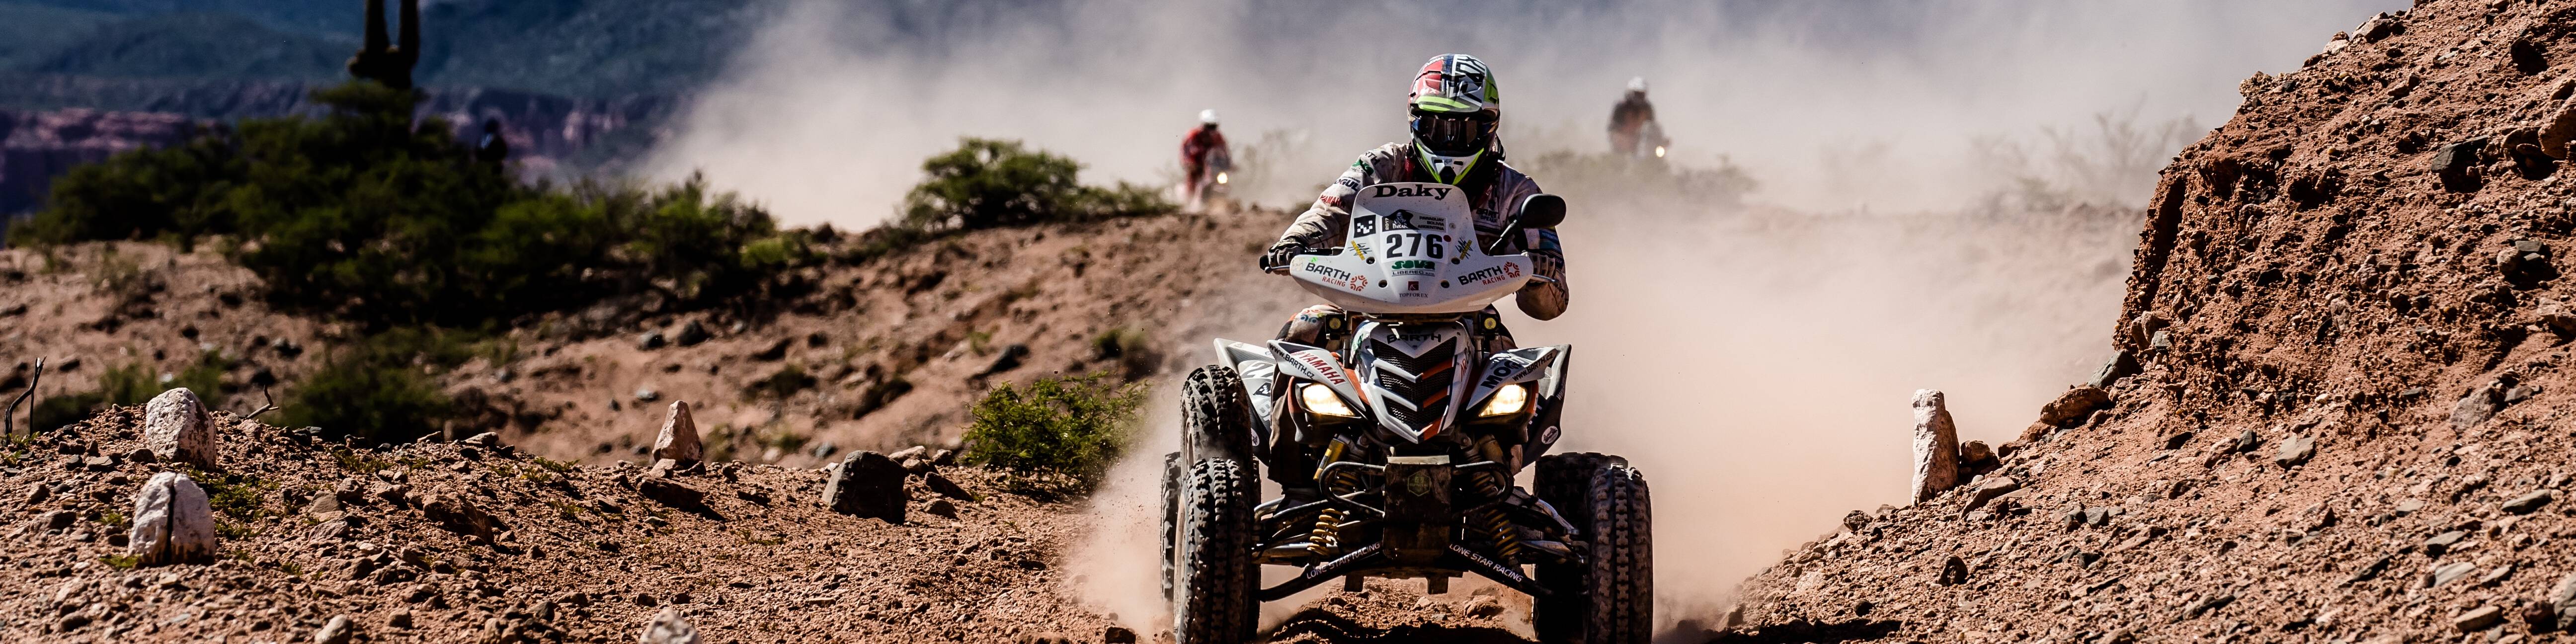 BARTH Racing na Rallye Dakar